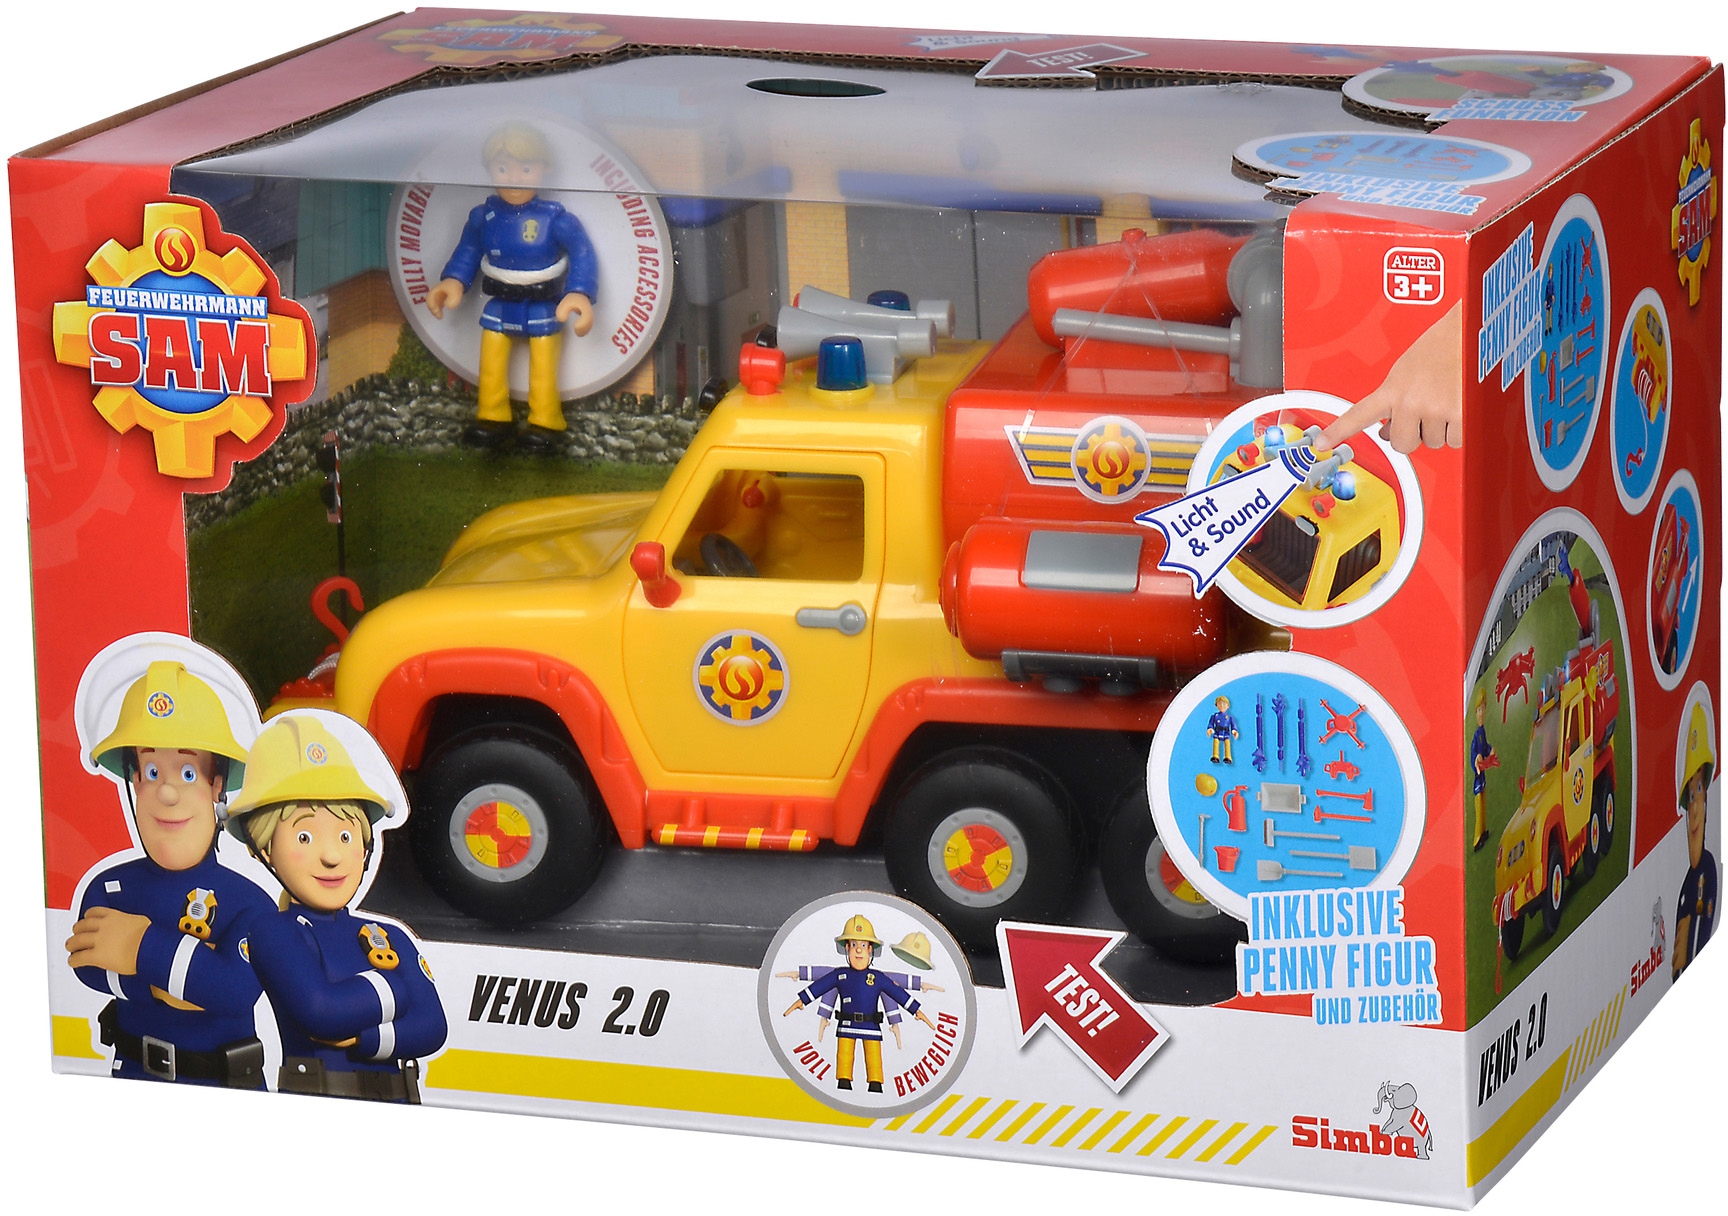 SIMBA Spielzeug-Feuerwehr »Feuerwehrmann Sam, Venus 2.0«, mit